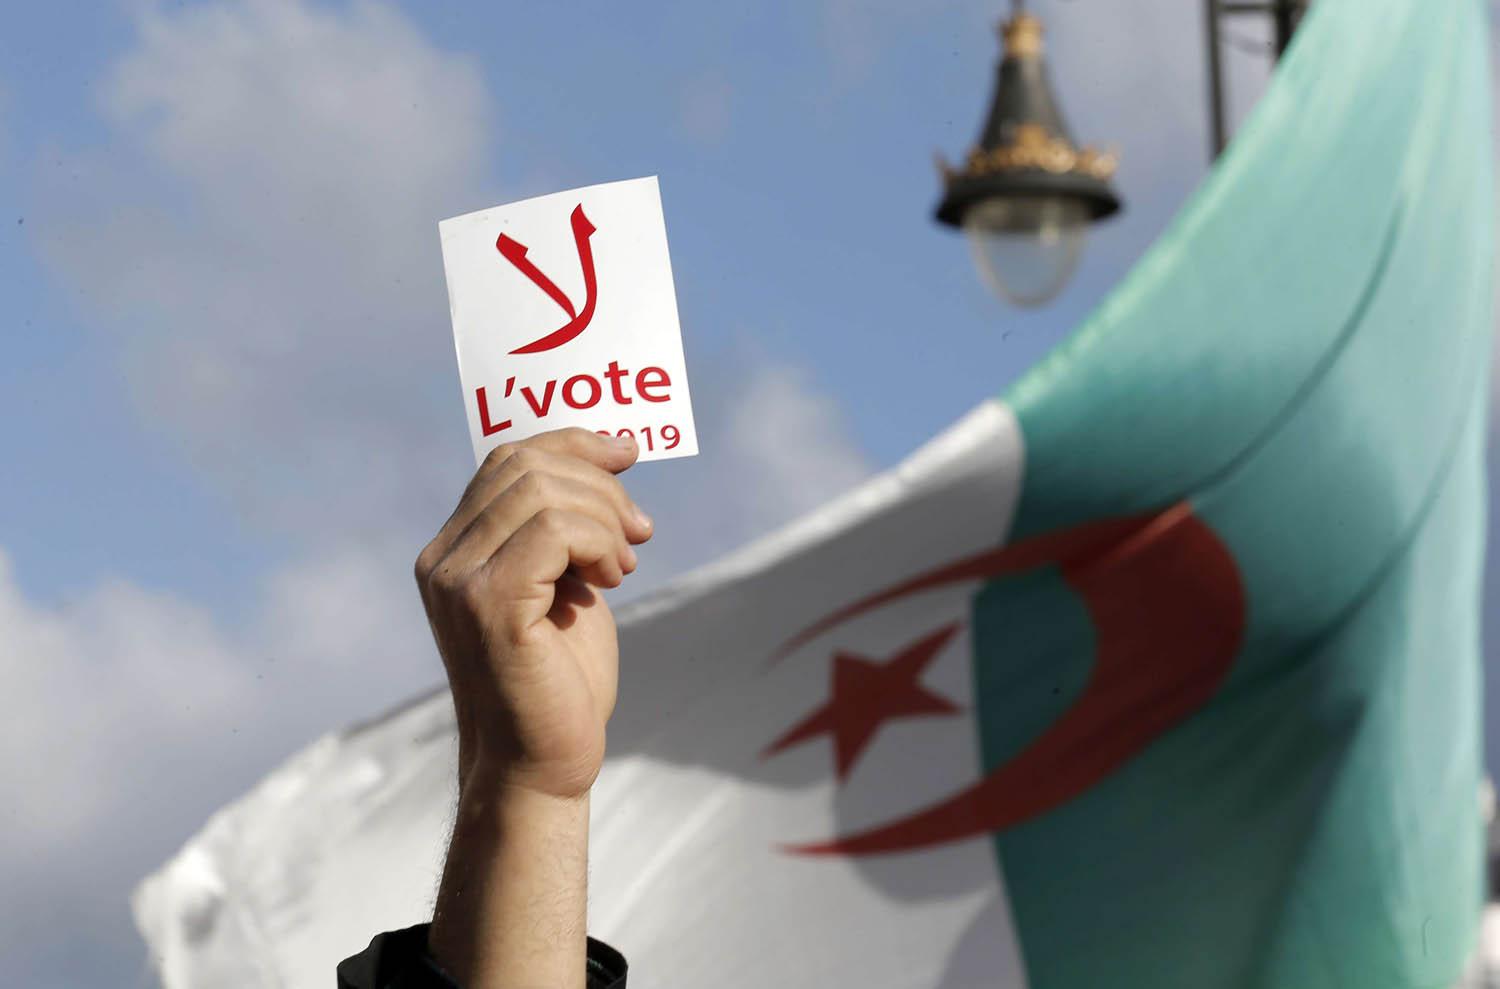 متظاهرون معارضون للانتخابات الرئاسية في الجزائر